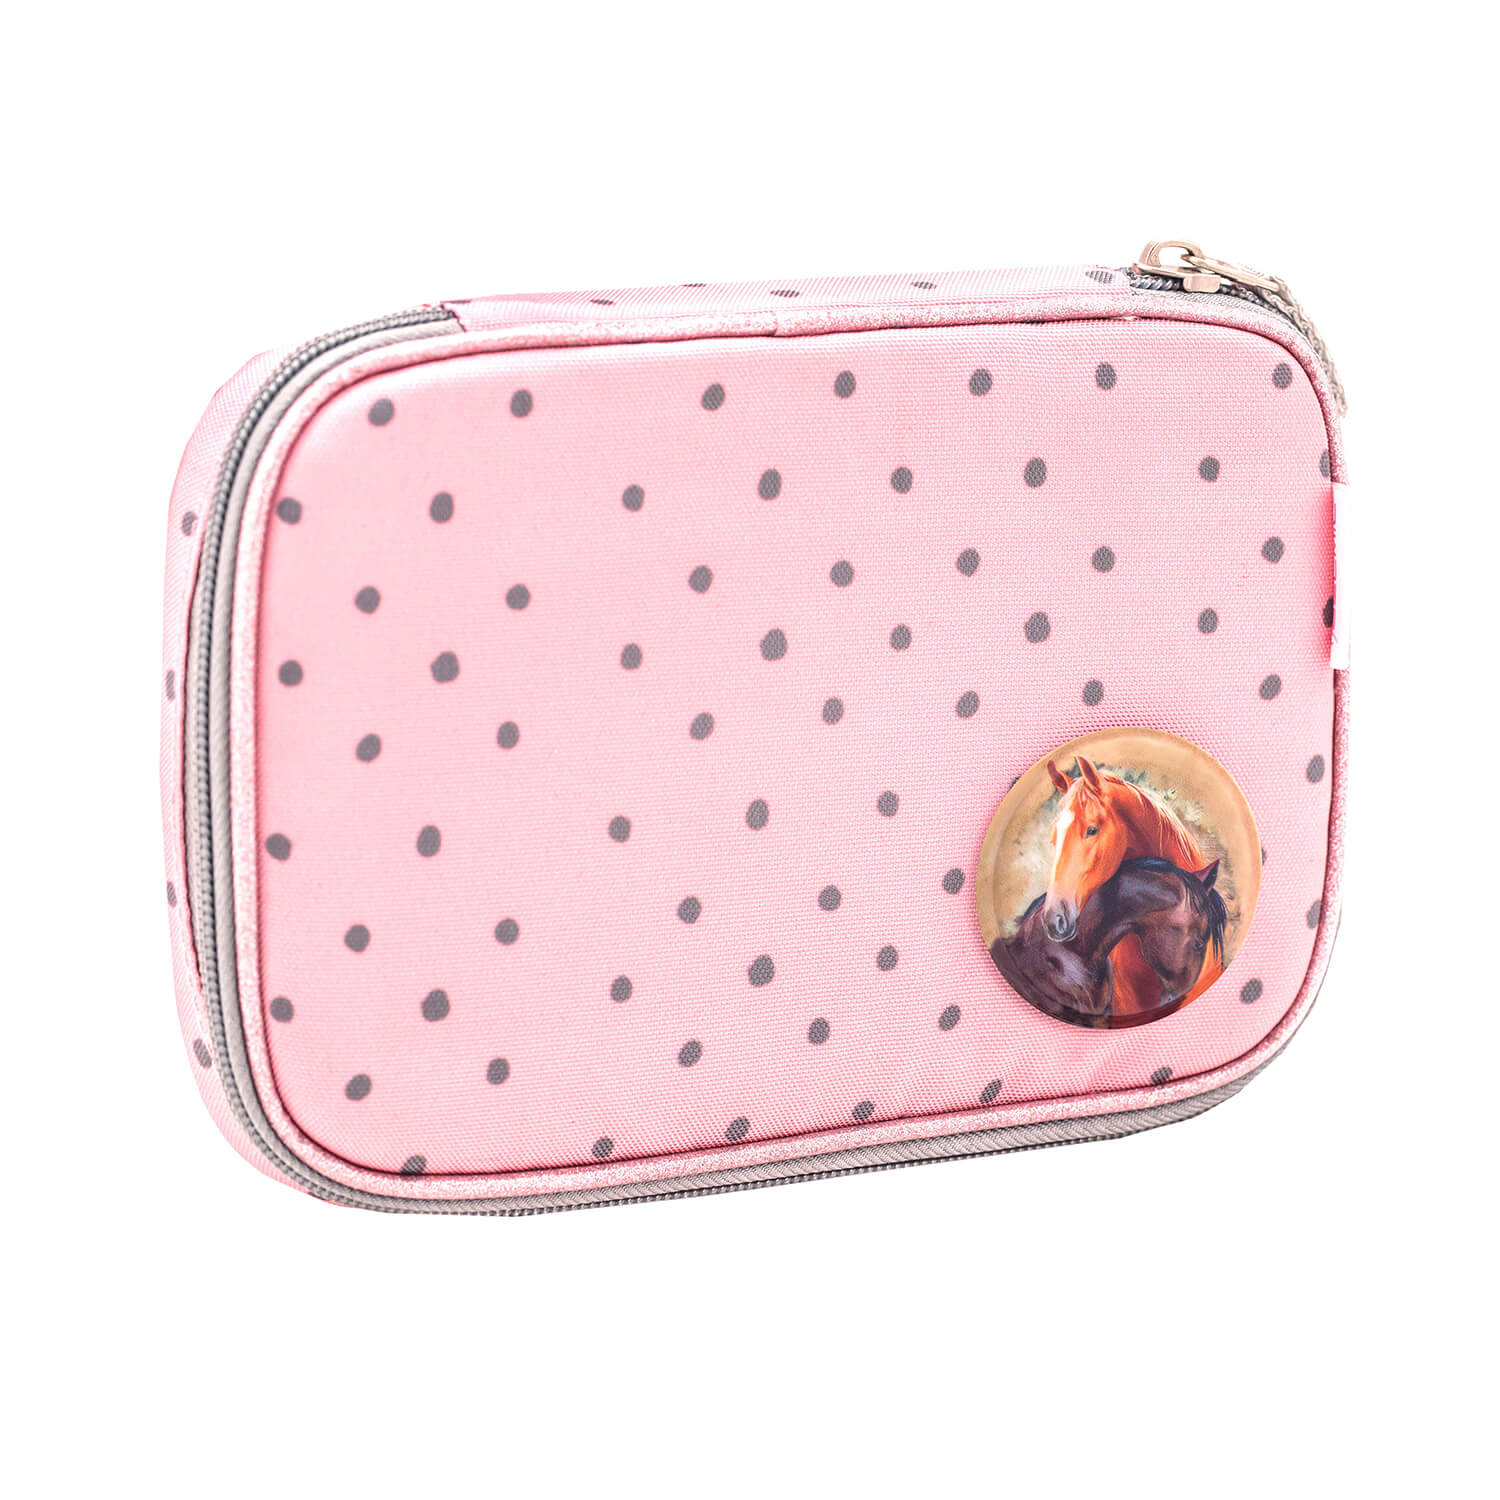 Smarty Pink Dots 2 schoolbag set 5 pcs